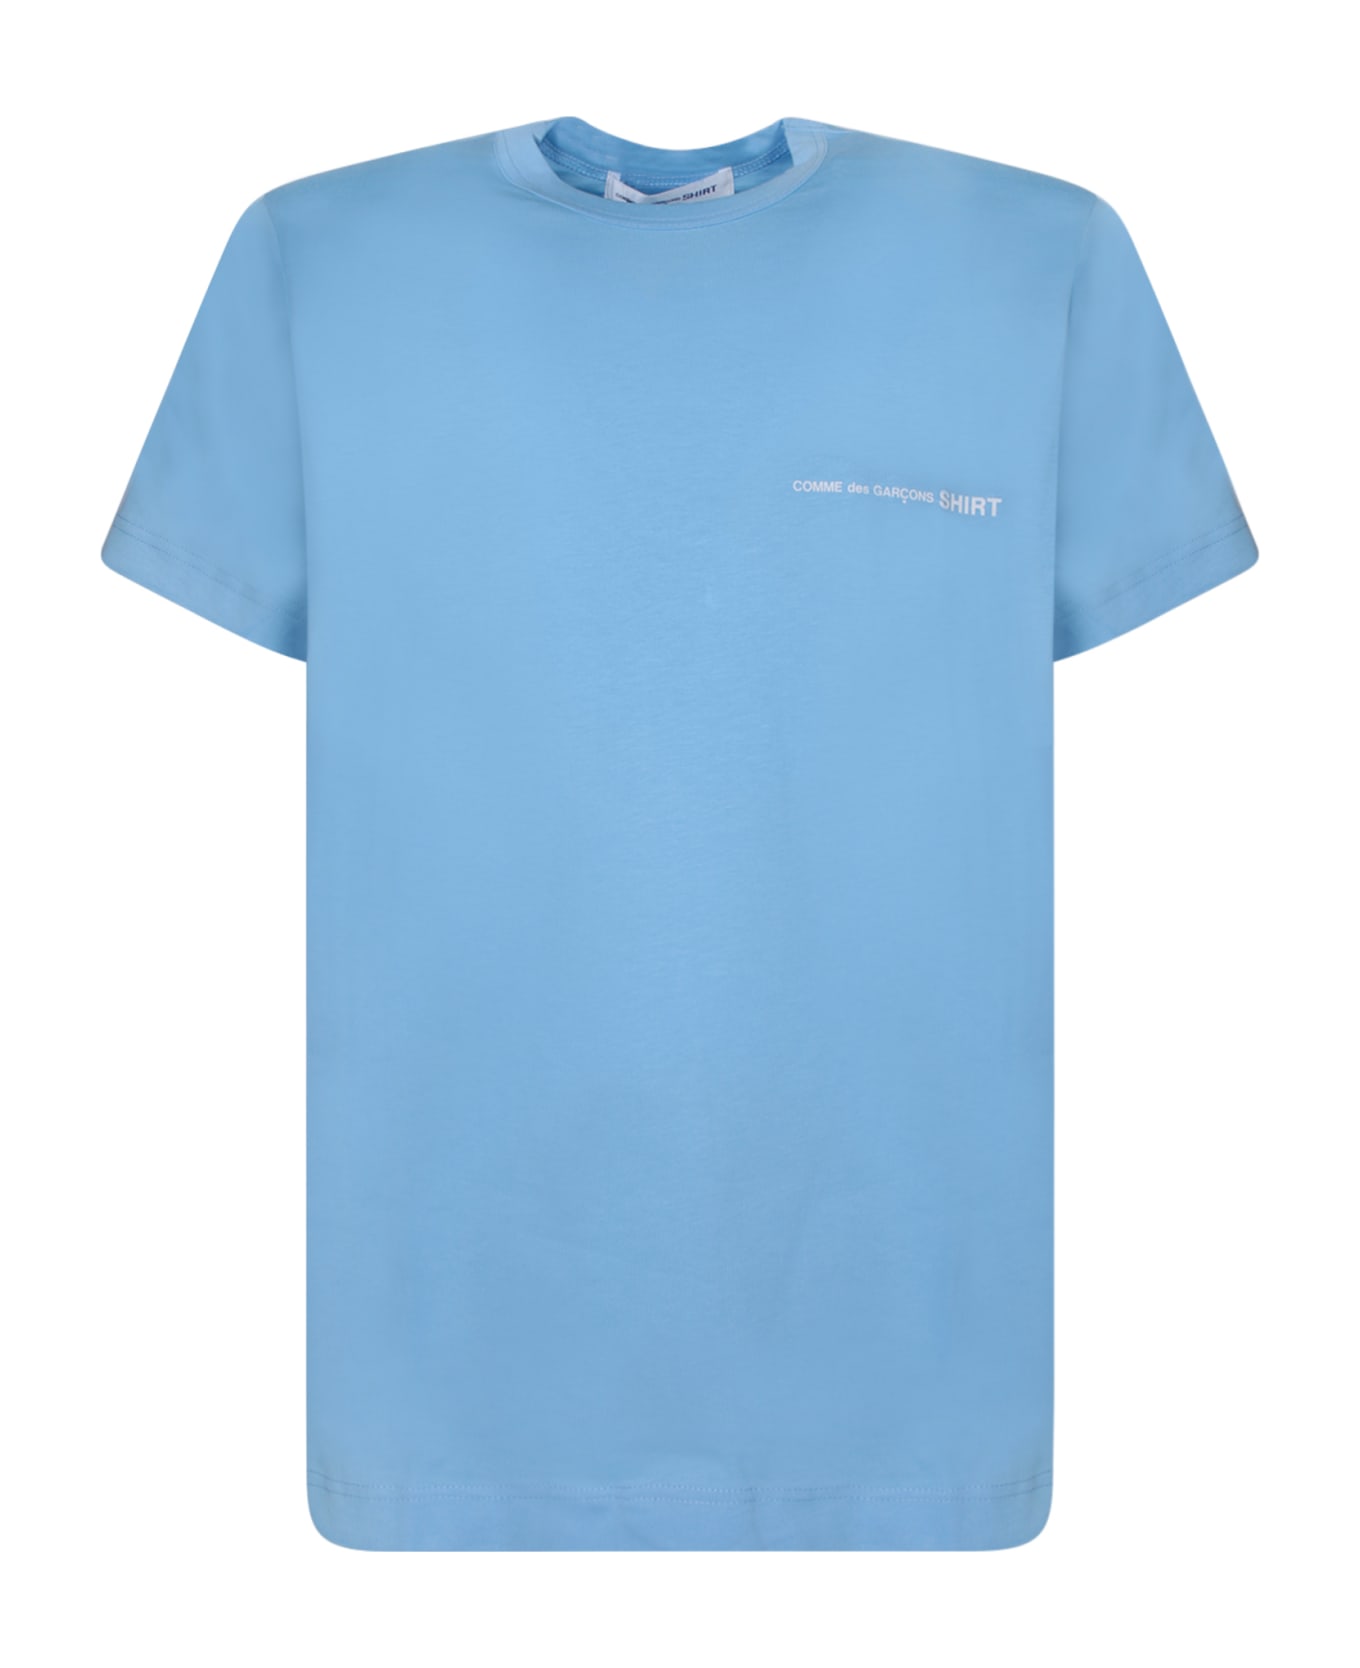 Comme des Garçons Shirt Regular Fit Light Blue T-shirt - Blue